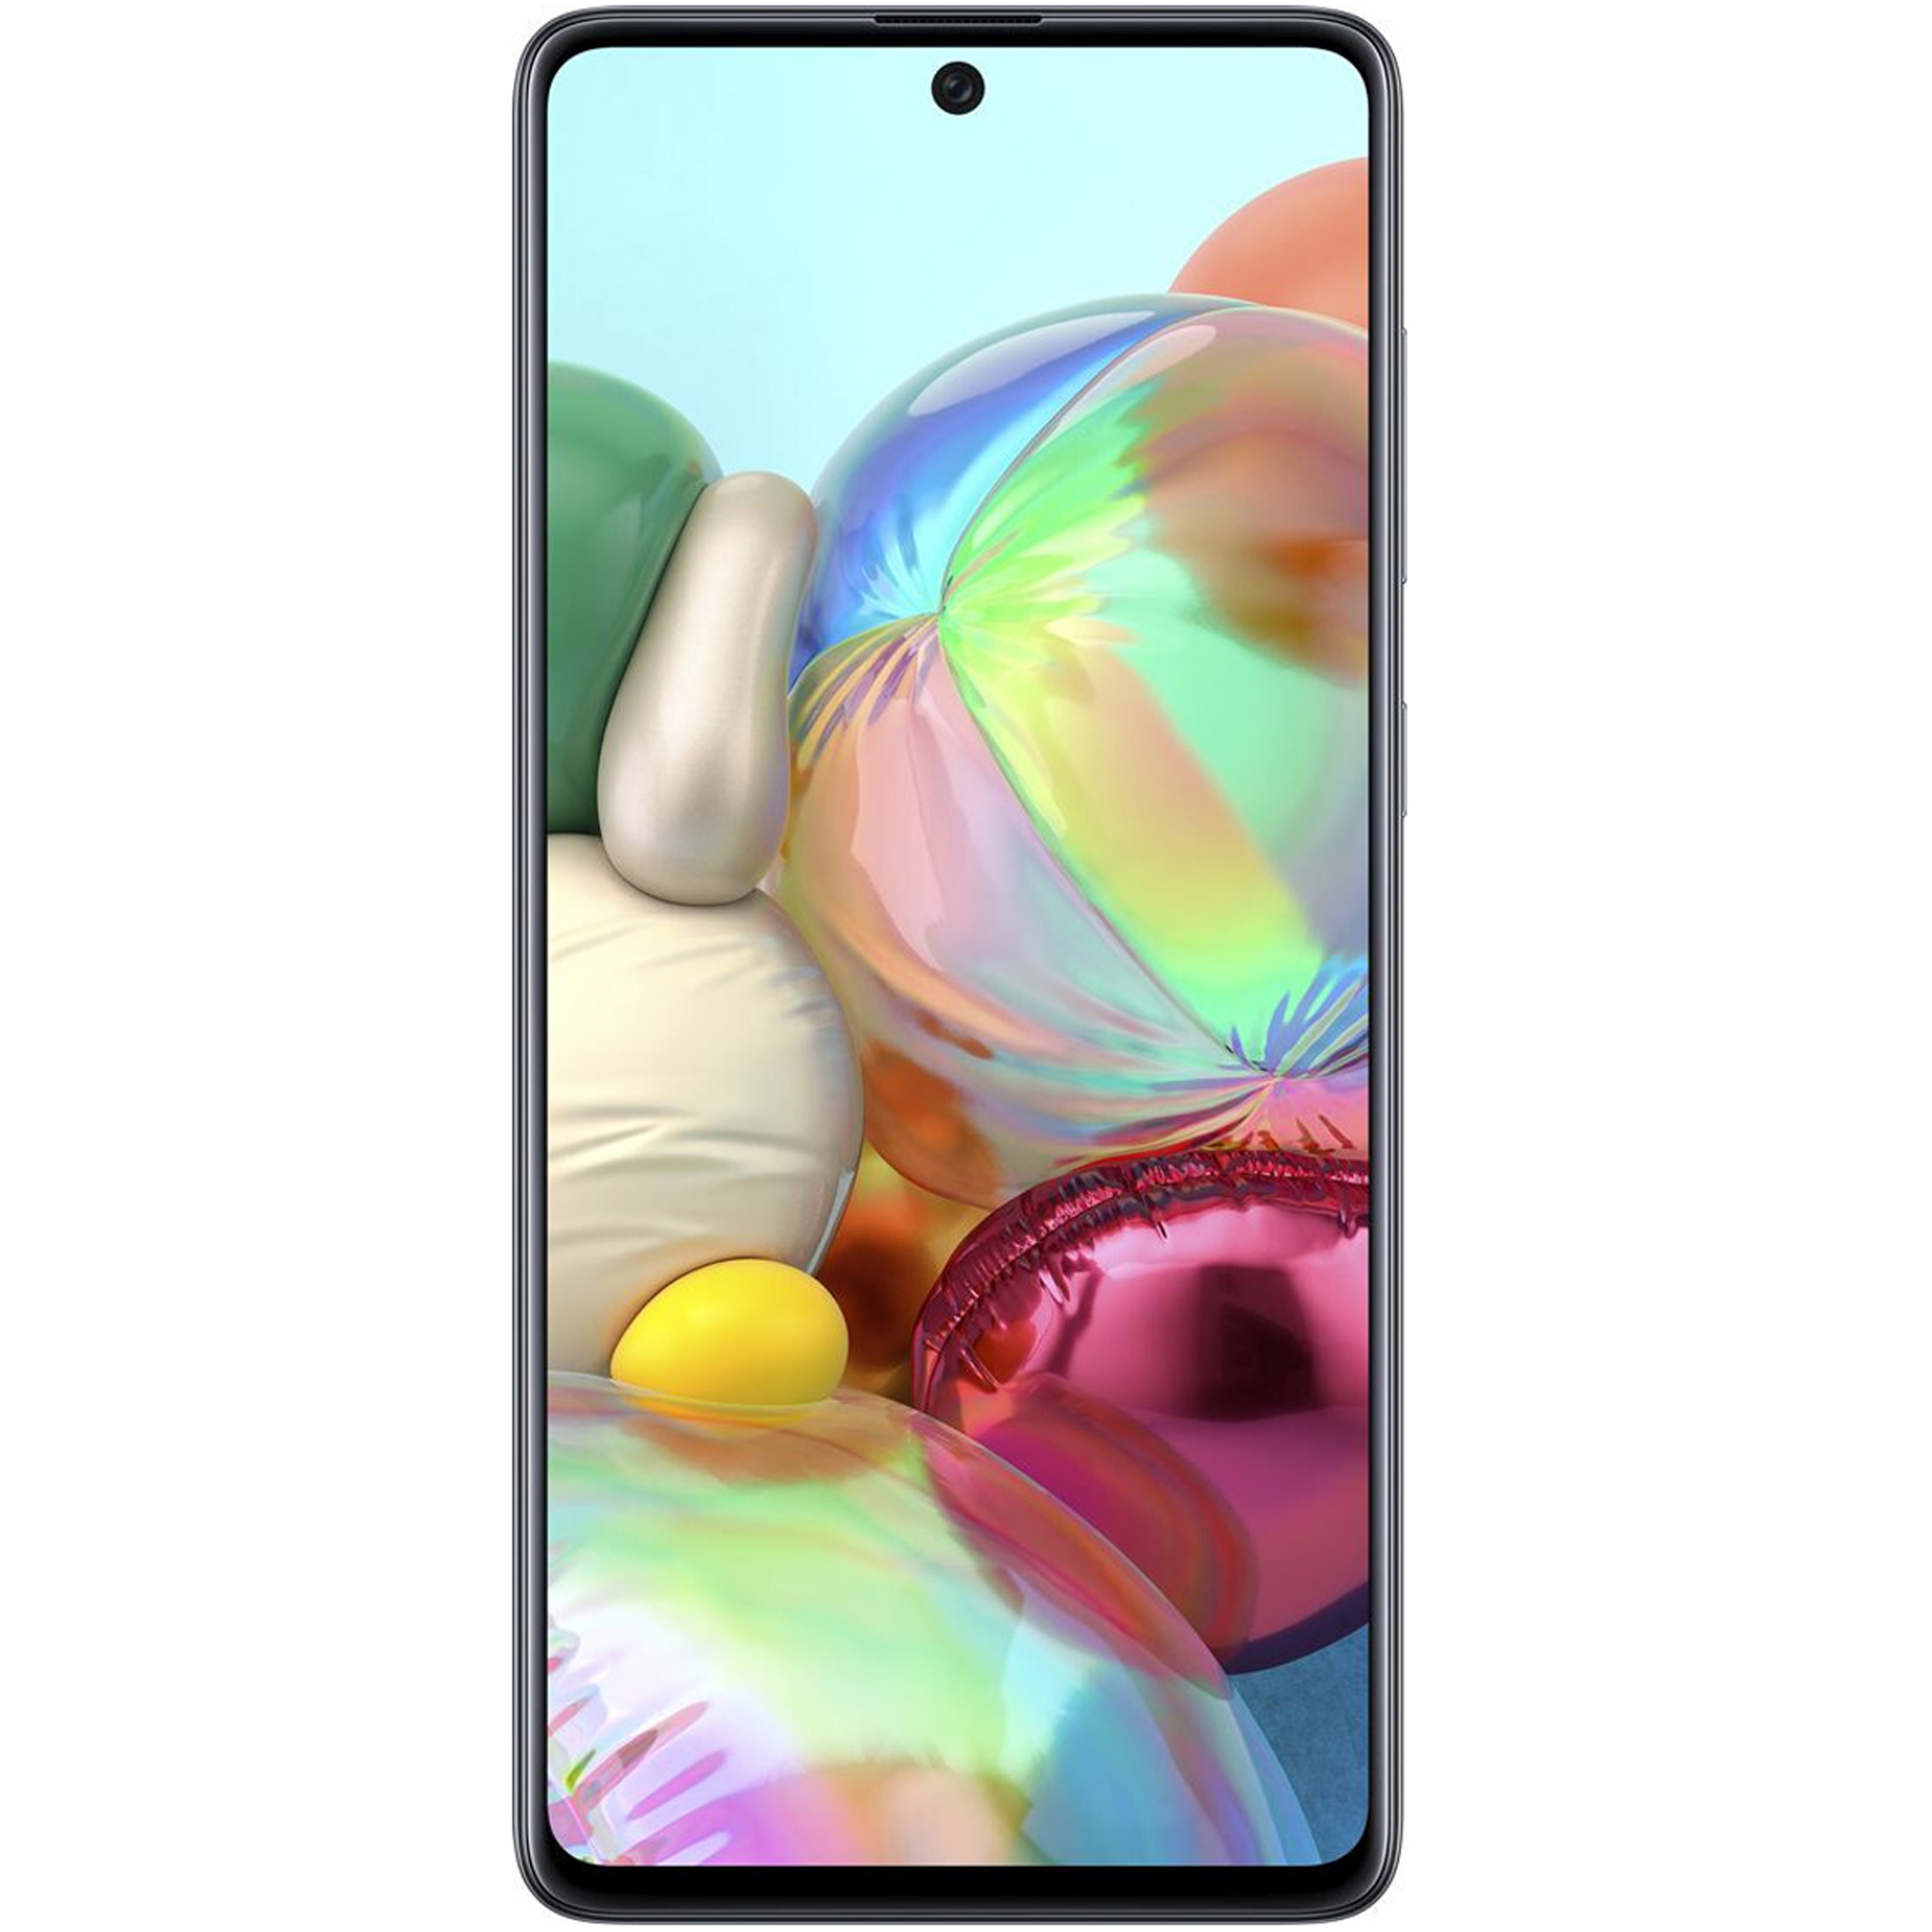 گوشی موبایل سامسونگ مدل Galaxy A71 SM-A715F/DS دو سیم کارت ظرفیت 128 گیگابایت همراه با رم 8 گیگابایت - طرح قیمت شگفت انگیز